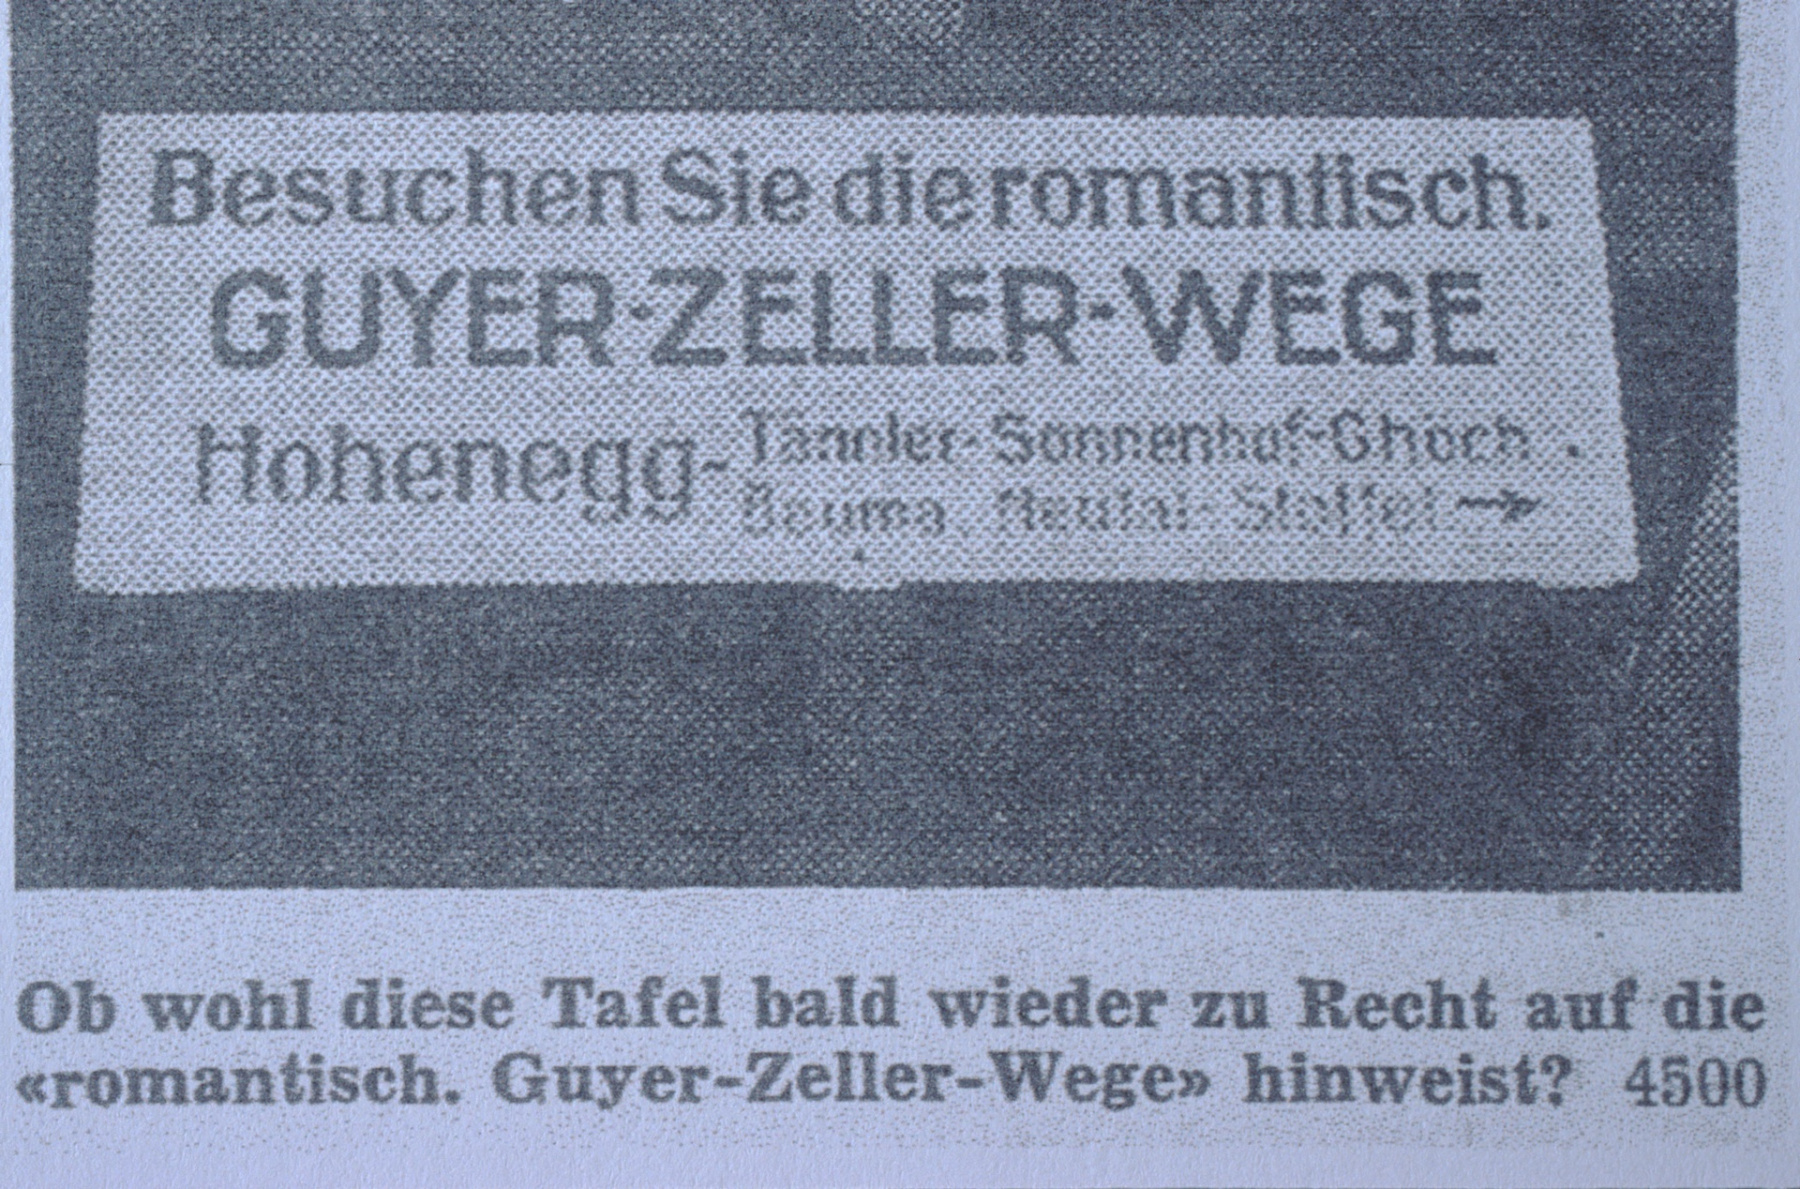 Guyer-Zeller Wanderwege, SBB verlangen 10.-Fr 1953, einmaligen Beitrag